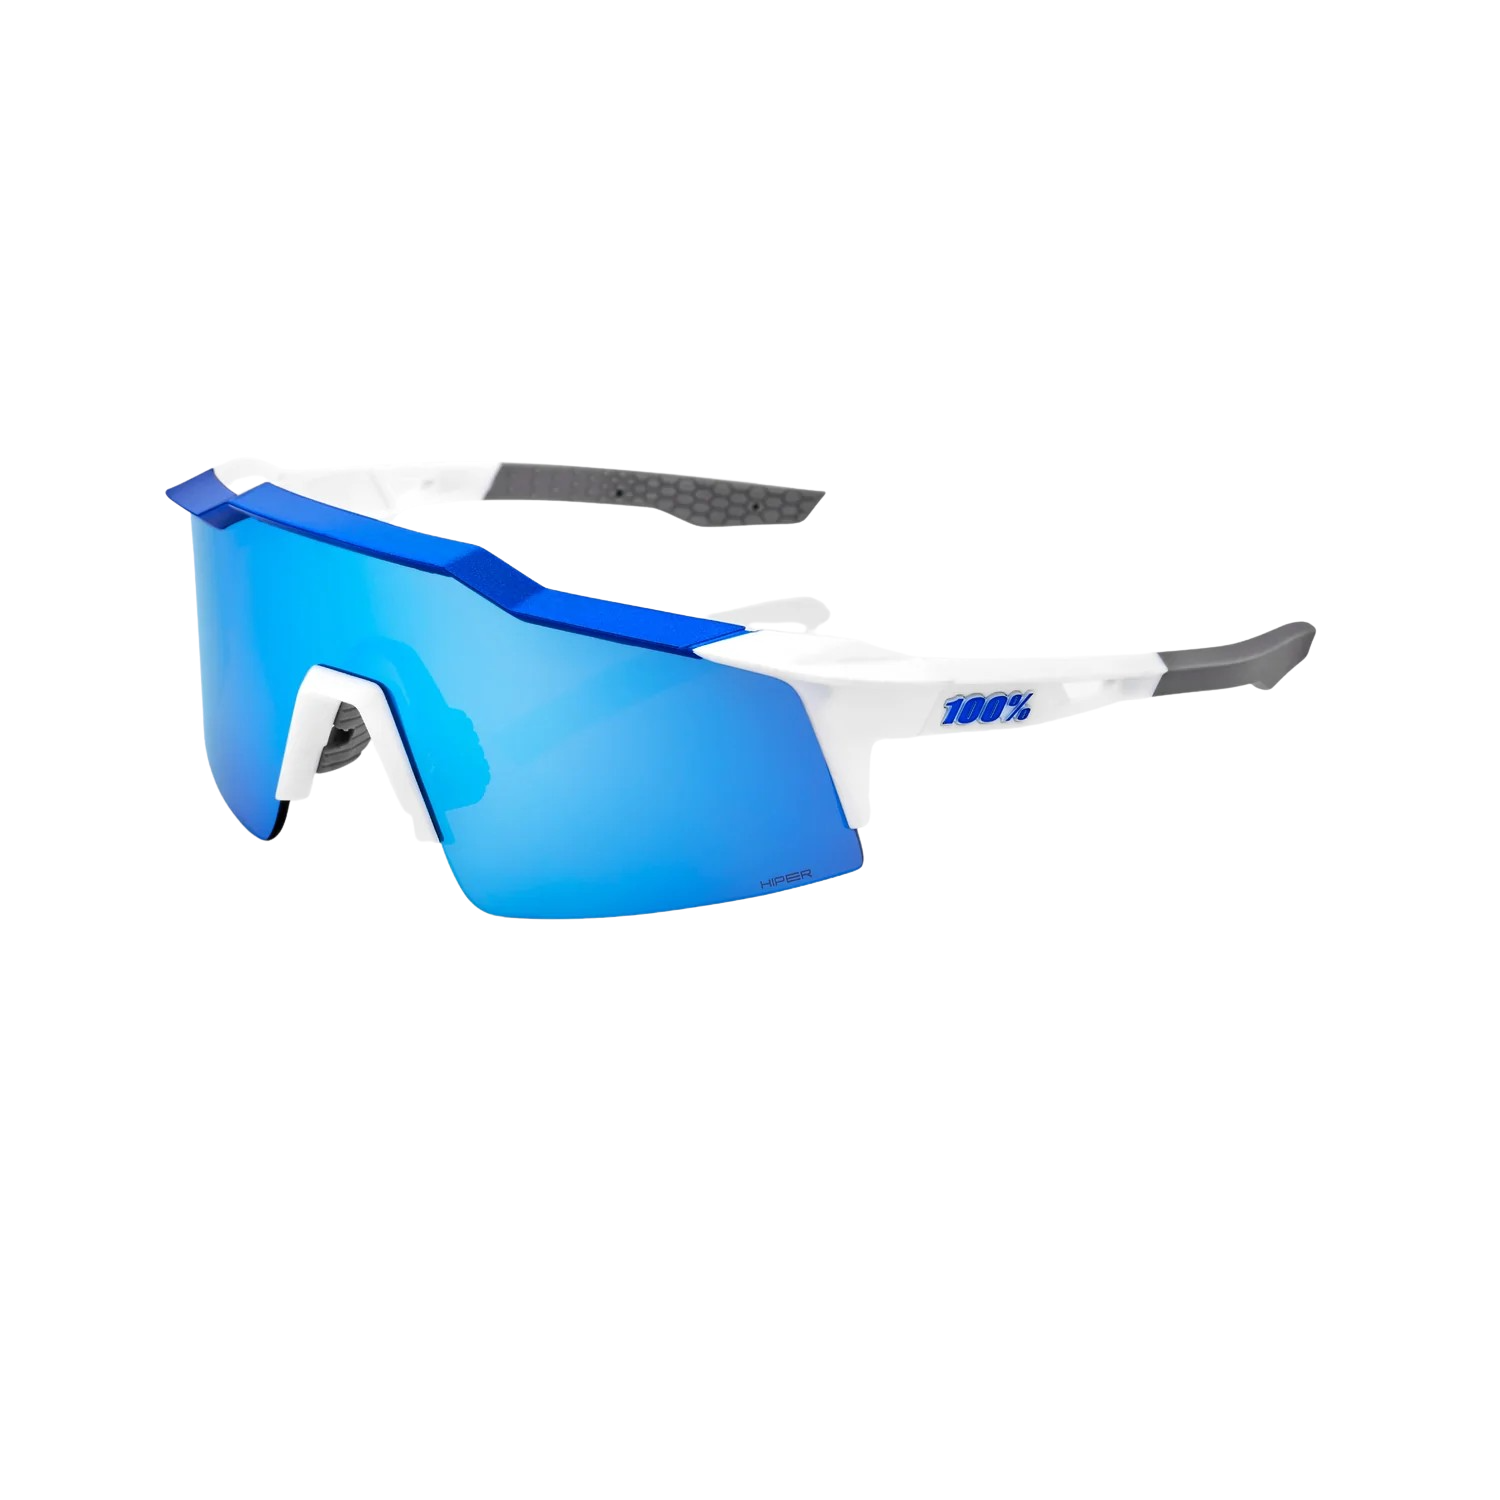 100% SPEEDCRAFT SL Mirror Sunglasses, , large image number null